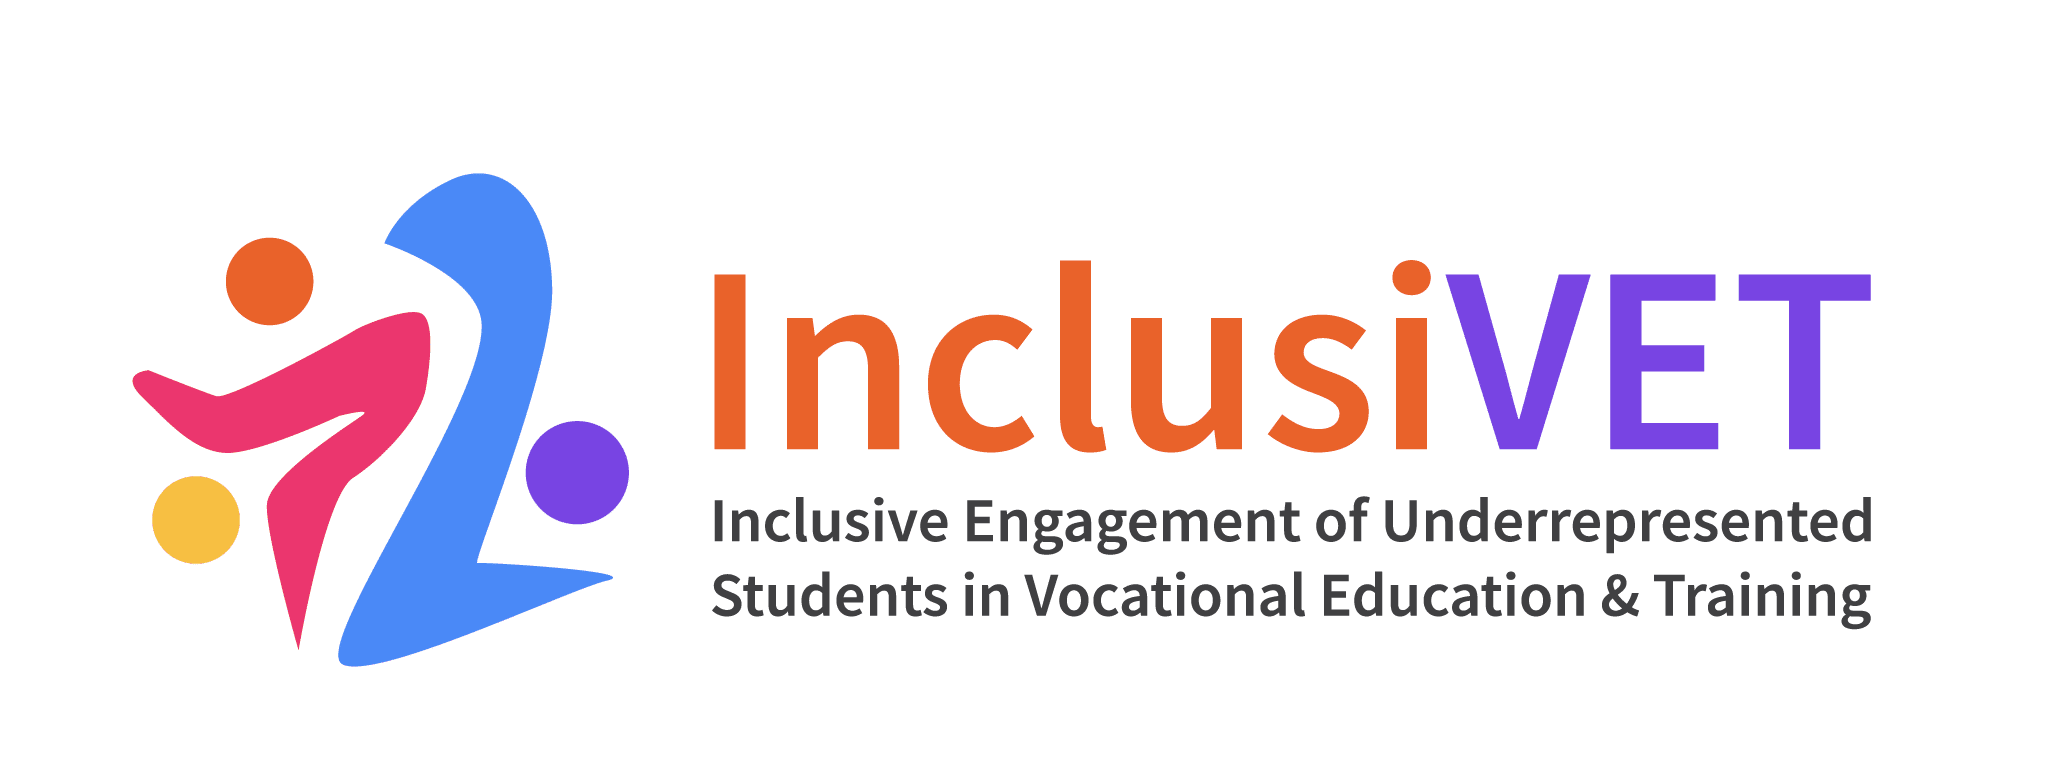 Projet inclusivet Engagement inclusif des étudiants sous-représentés dans l’enseignement et la formation professionnels